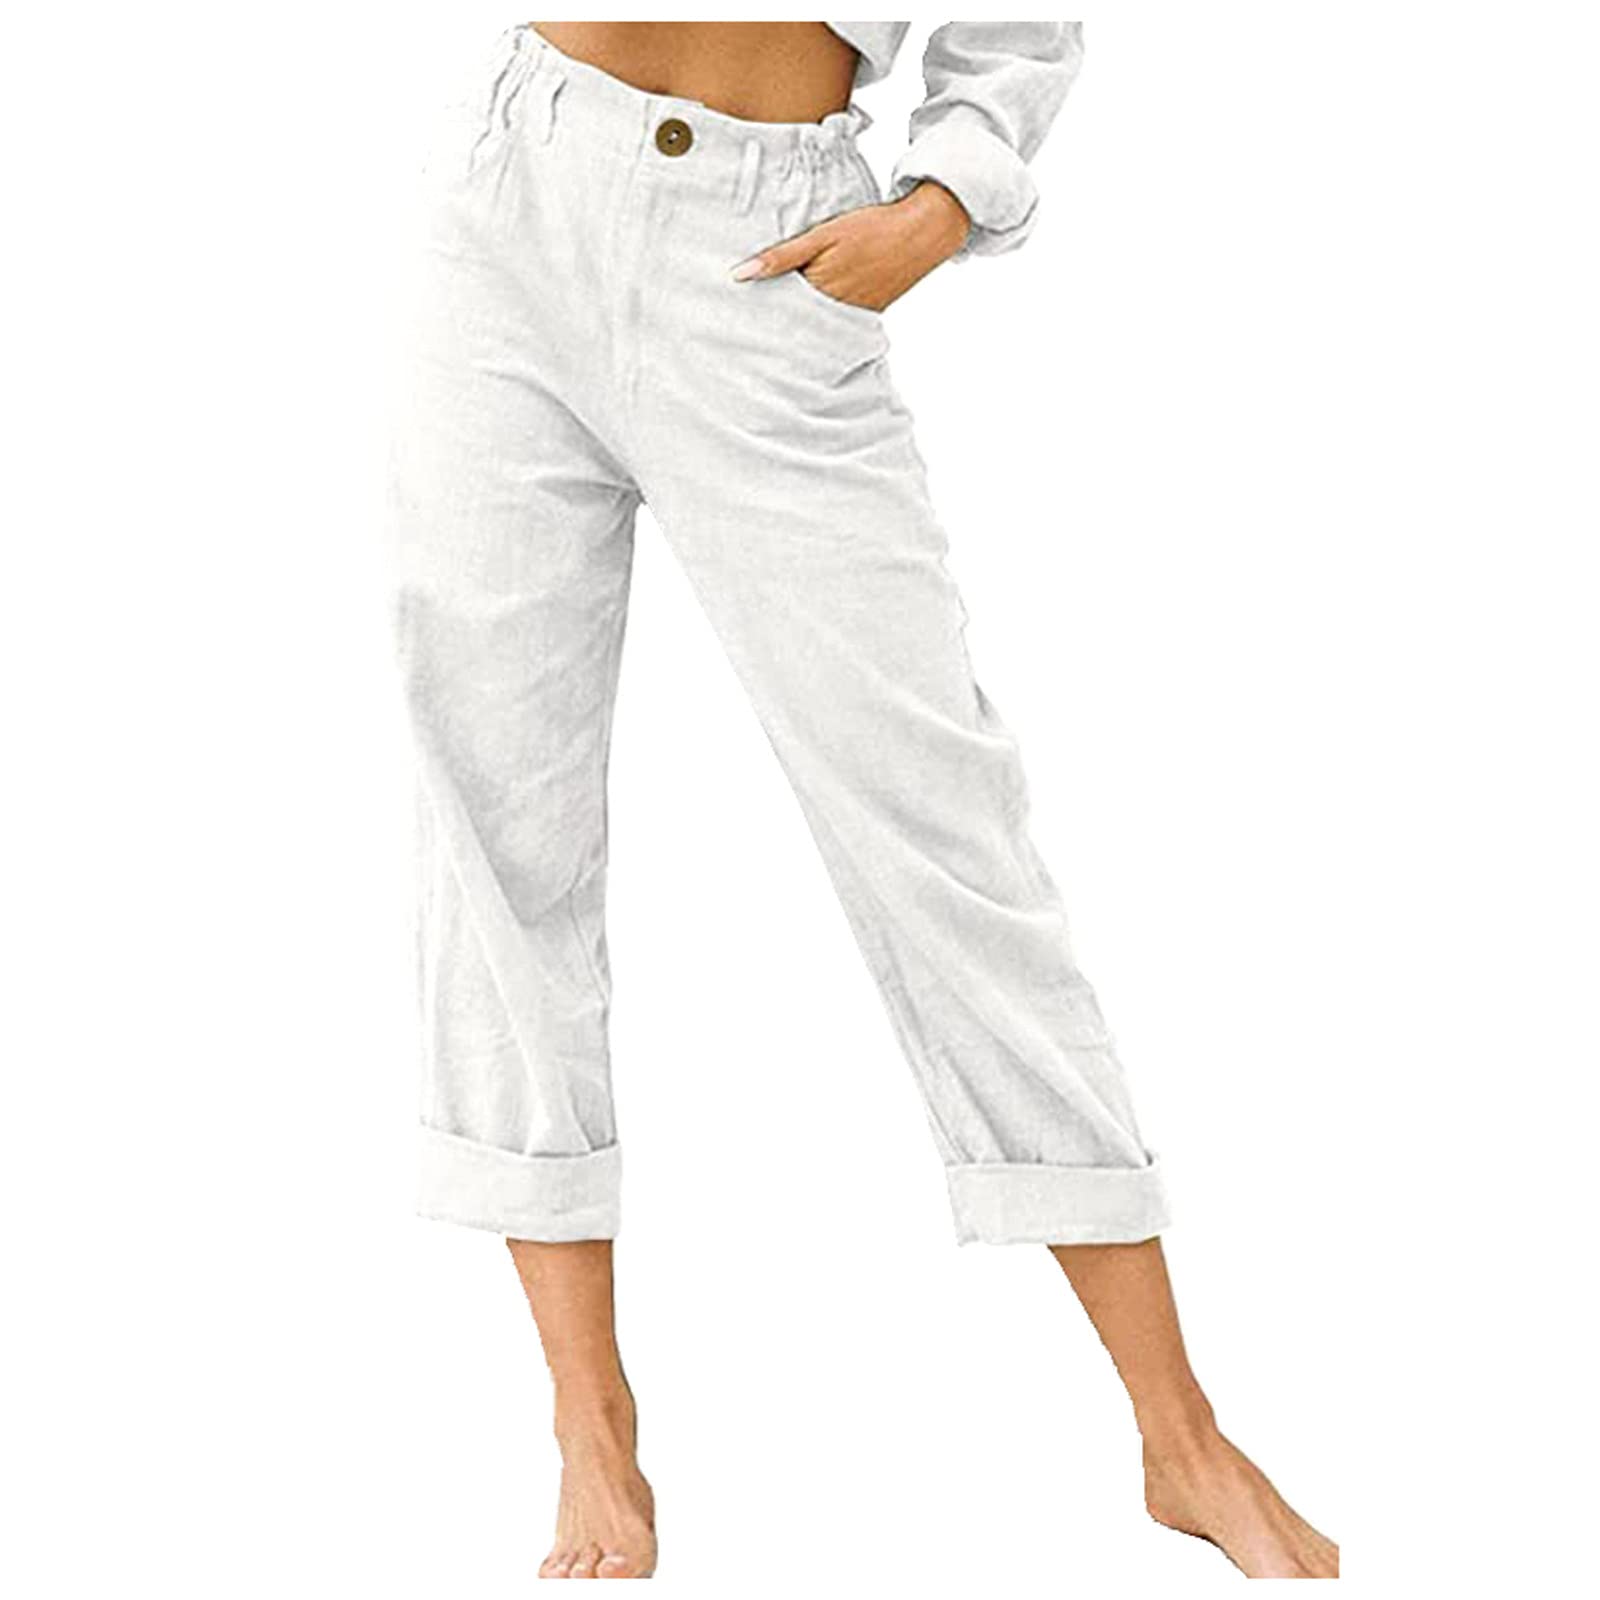  Crop Linen Pants for Women Womens Elastic High Waist